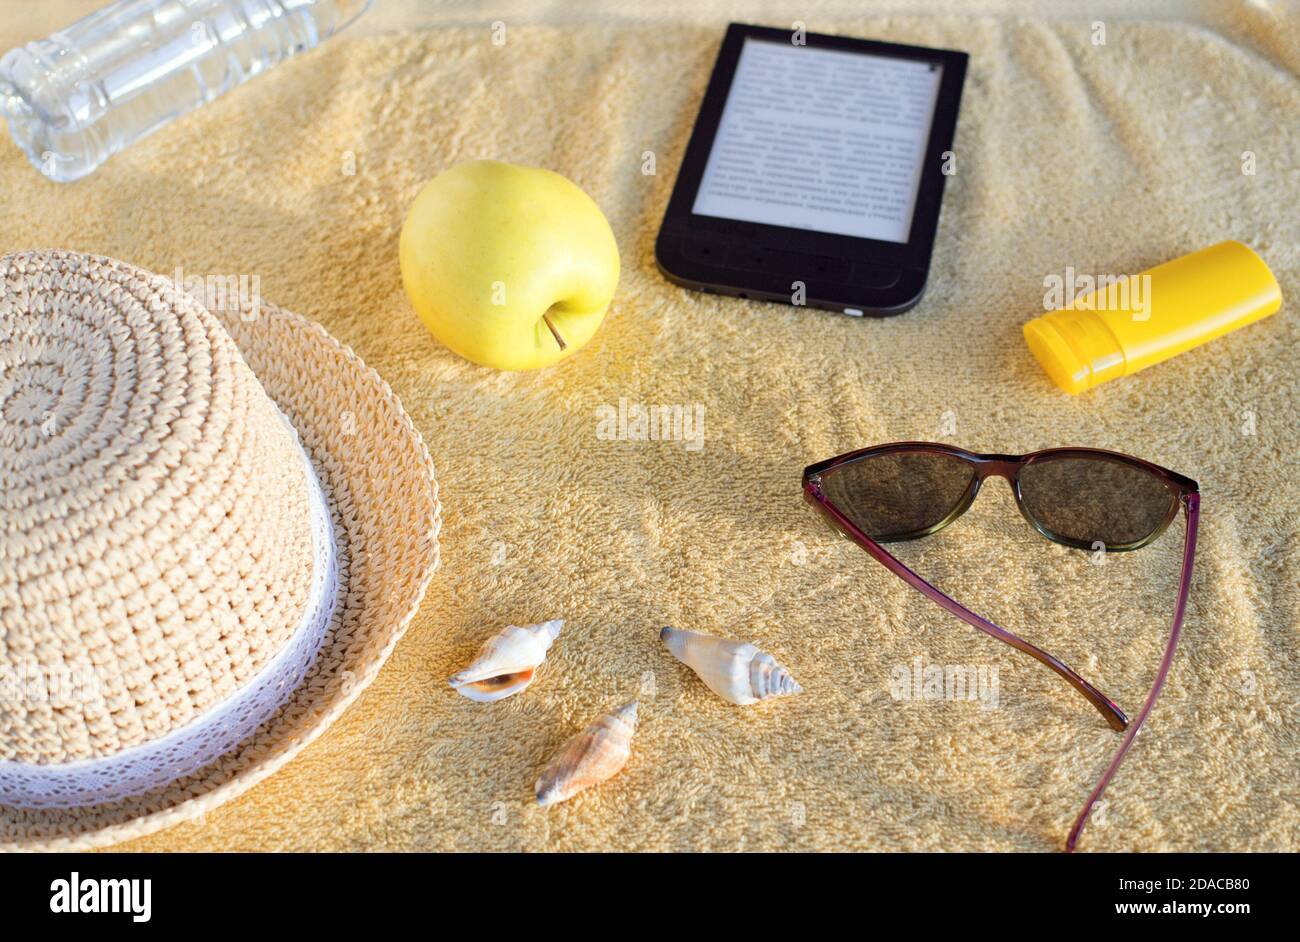 Strohhut, Muscheln, Sonnenbrandcreme, Sonnenbrille, Apfel, Flasche mit Wasser und E-Book auf beigefarbenem Strandtuch. Weiches Sonnenlicht am Abend. Stockfoto